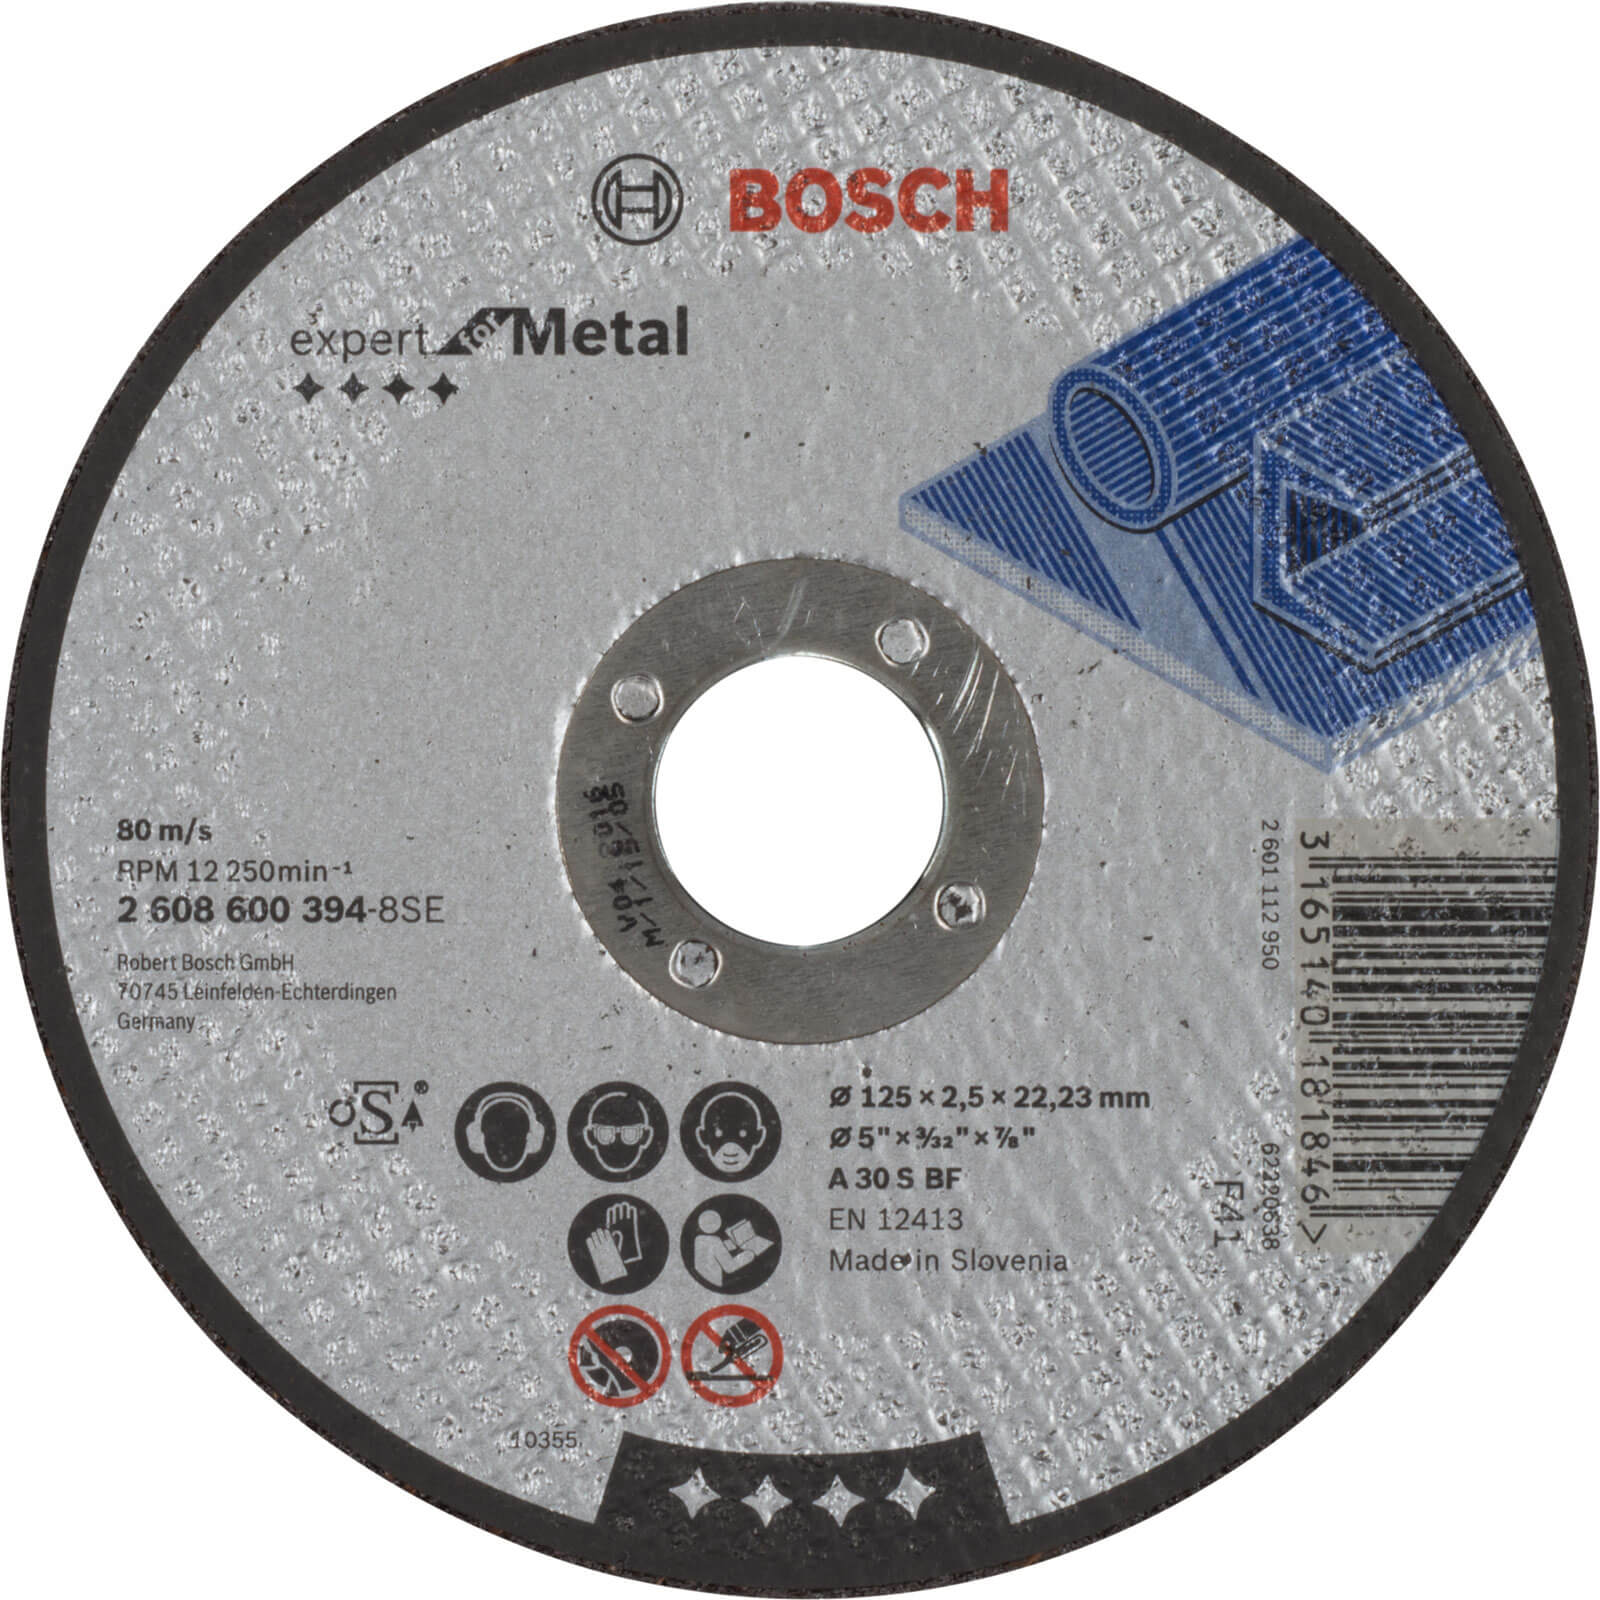 Photo of Bosch Expert A30s Bf Flat Metal Cutting Disc 125mm